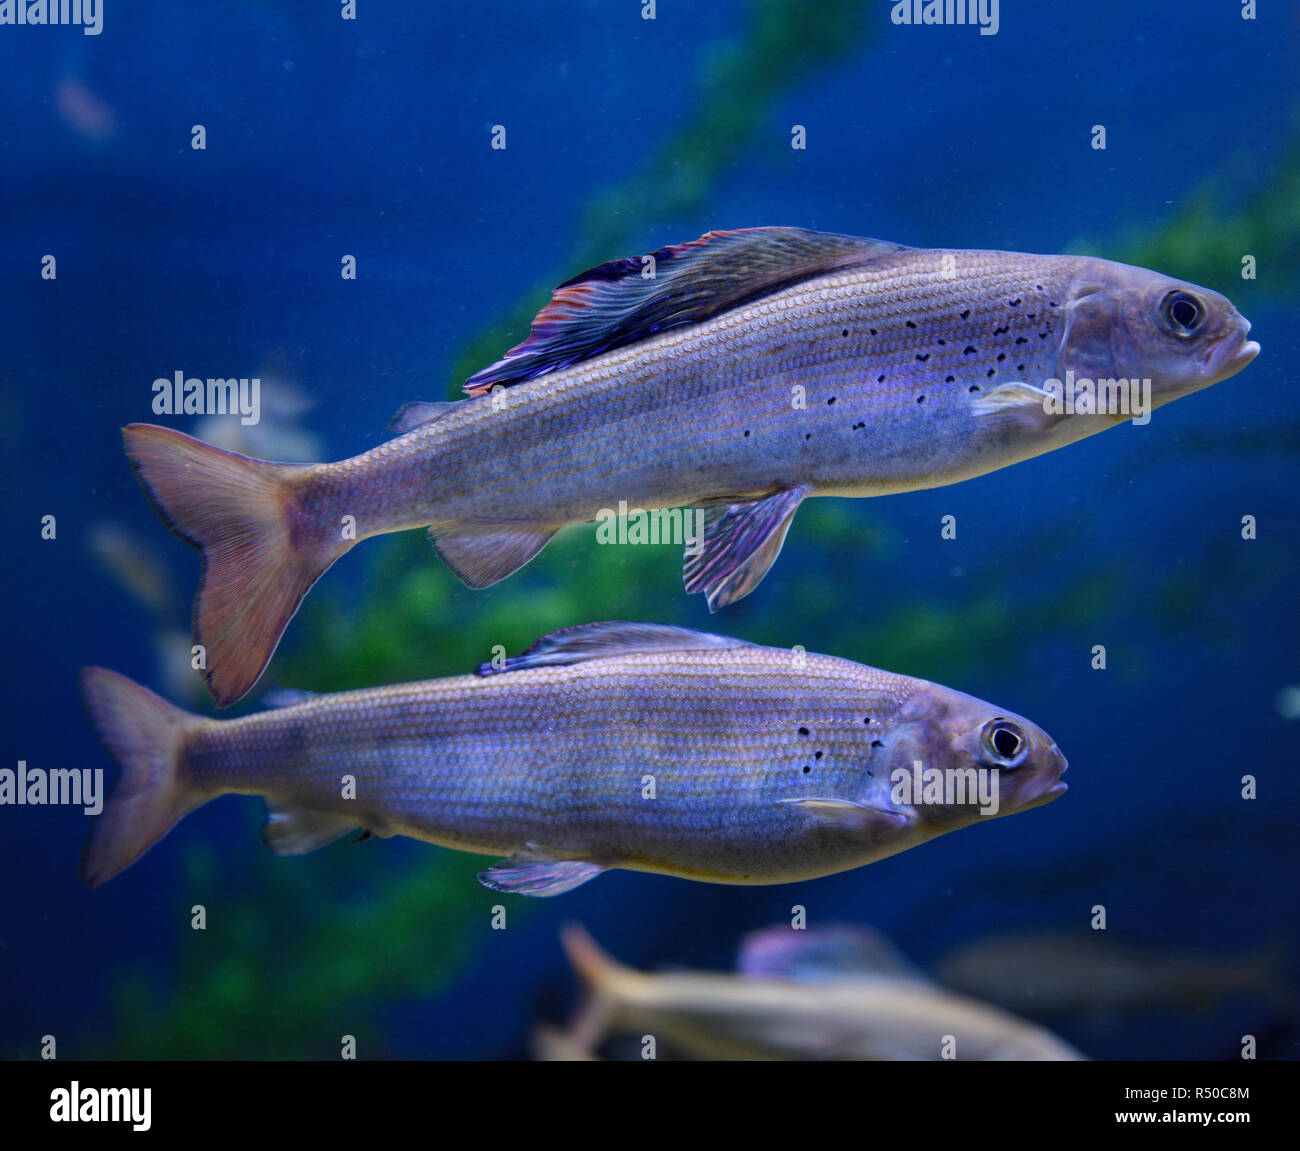 Dos Tímalo Ártico una aleta dorsal con coloridos peces de agua dulce fría nadar en un acuario Foto de stock